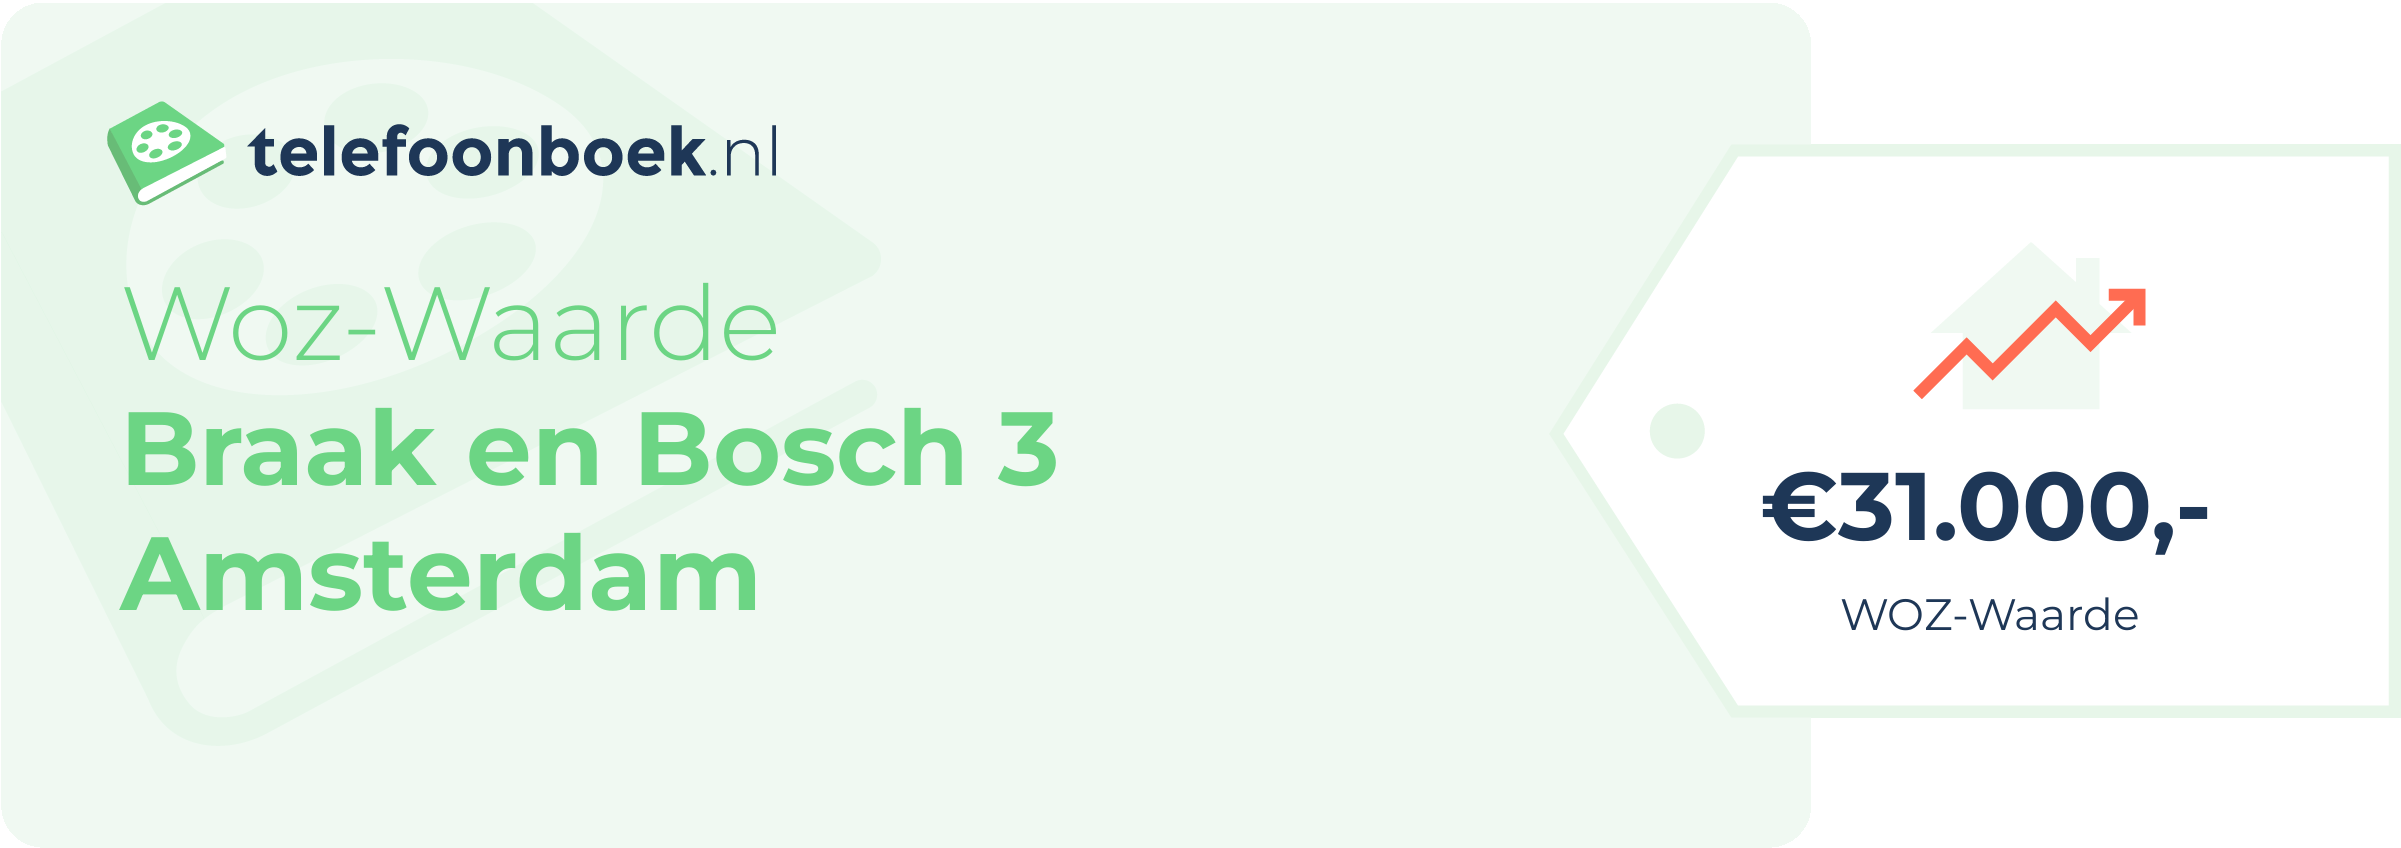 WOZ-waarde Braak En Bosch 3 Amsterdam